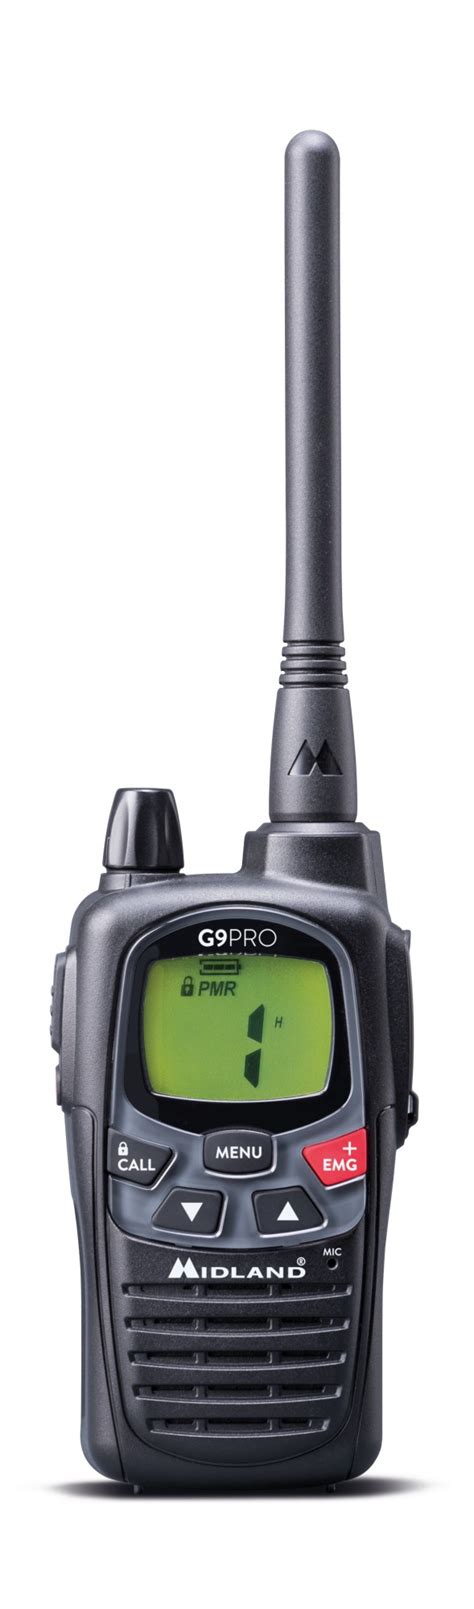 nouveau talkie walkie midland  pro avis test  prix telephonie professionnelle